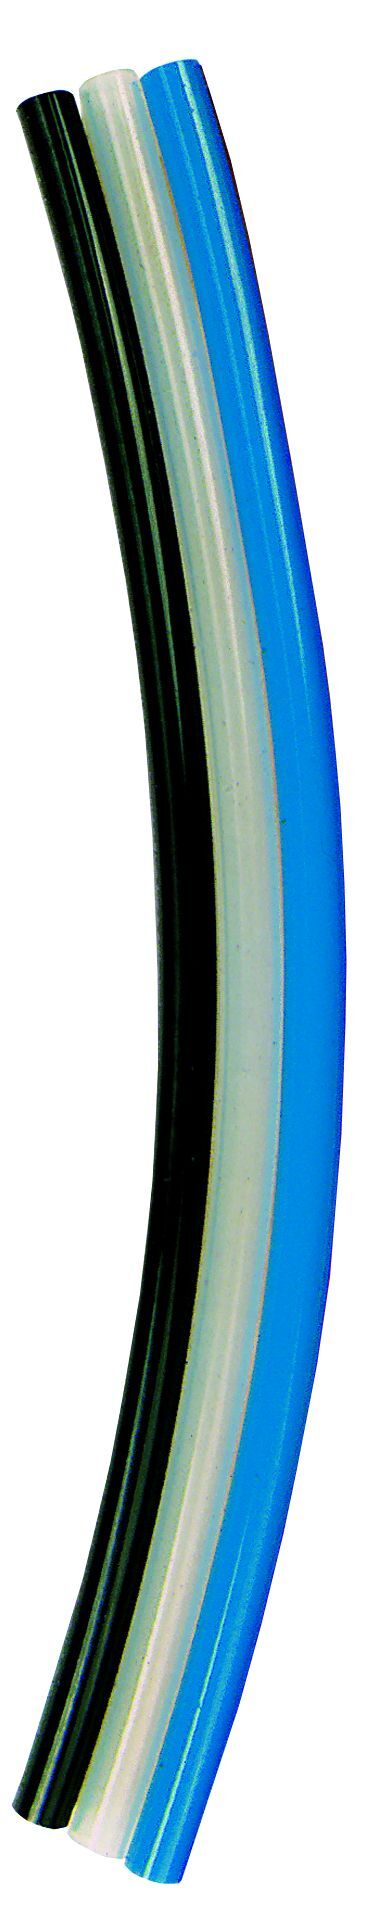 Tuyau en polyuréthane (PUR) bleu / Tuyau Ø extérieur 10 mm / Rouleau de 50 m 113708